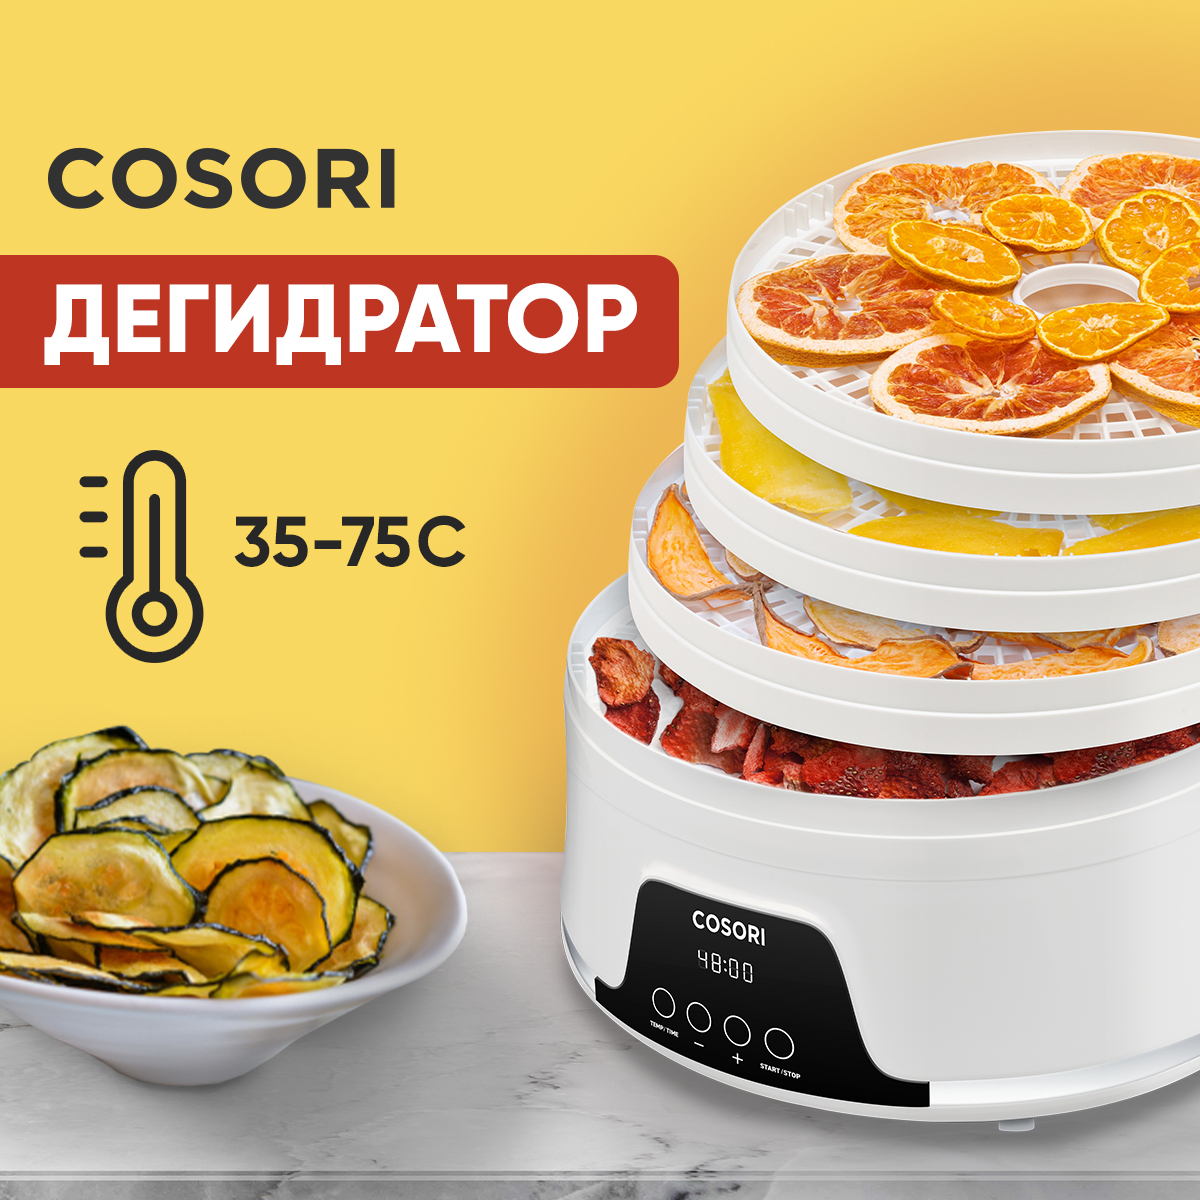 Сушилка для овощей и фруктов COSORI CFD-N051-W белый дегидратор pl 1105 400 вт белый